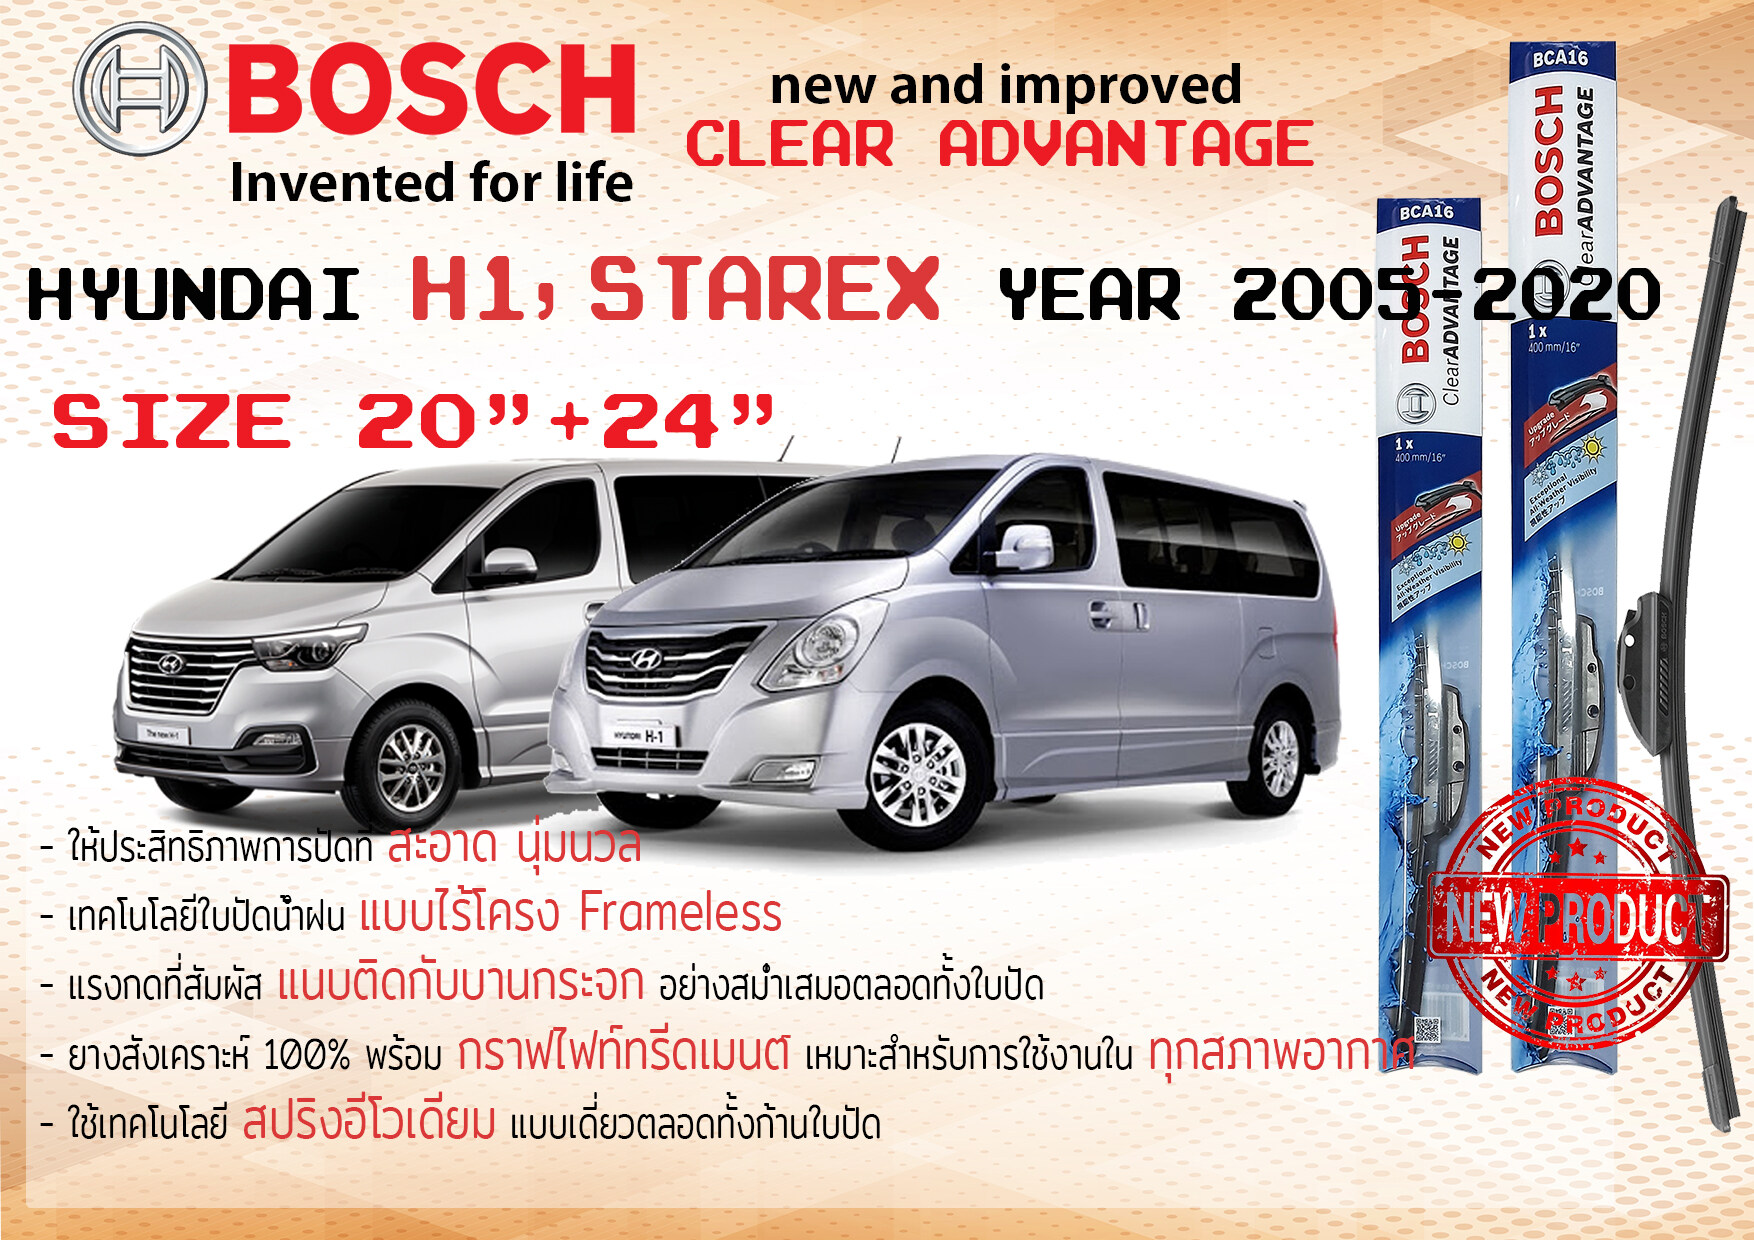 ใบปัดน้ำฝน คู่หน้า Bosch Clear Advantage frameless ก้านอ่อน ขนาด 20”+24” สำหรับรถ HYUNDAI H1, Grand STAREX ปี 2005-2020 ฮุนได เฮช1 เอชวัน เฮชวัน